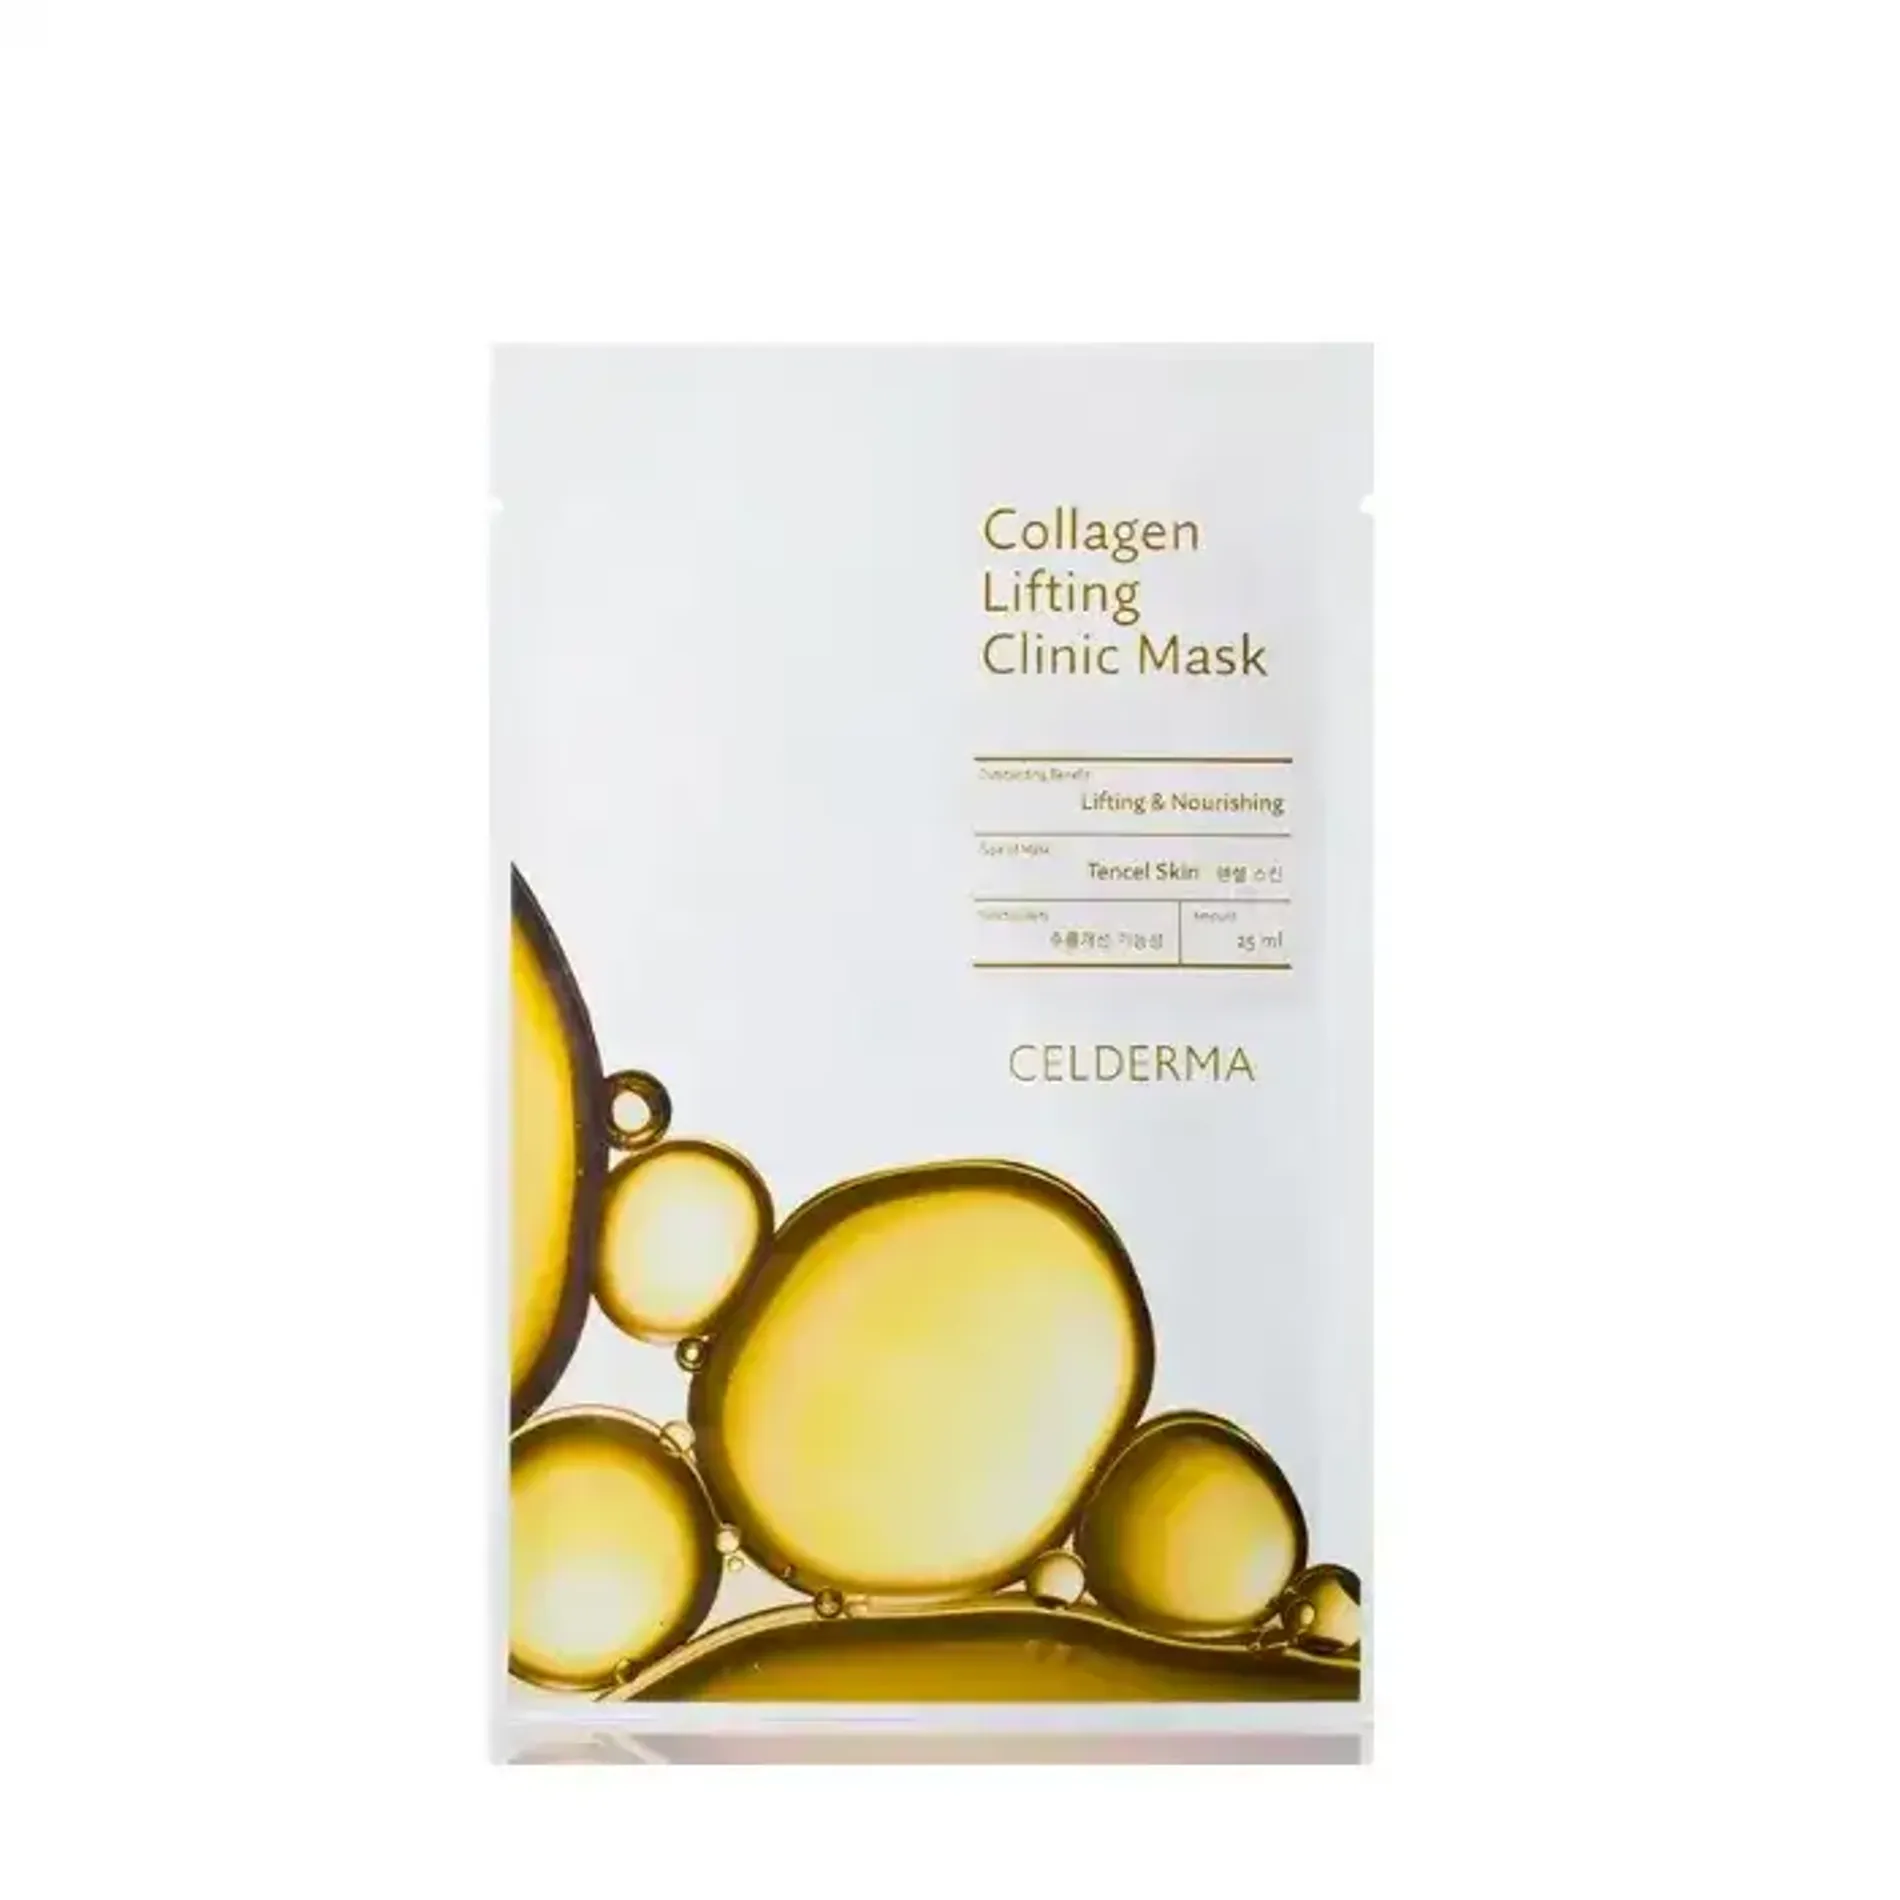 mat-na-giay-nang-co-da-cellderma-collagen-lifting-clinic-mask-25ml-1